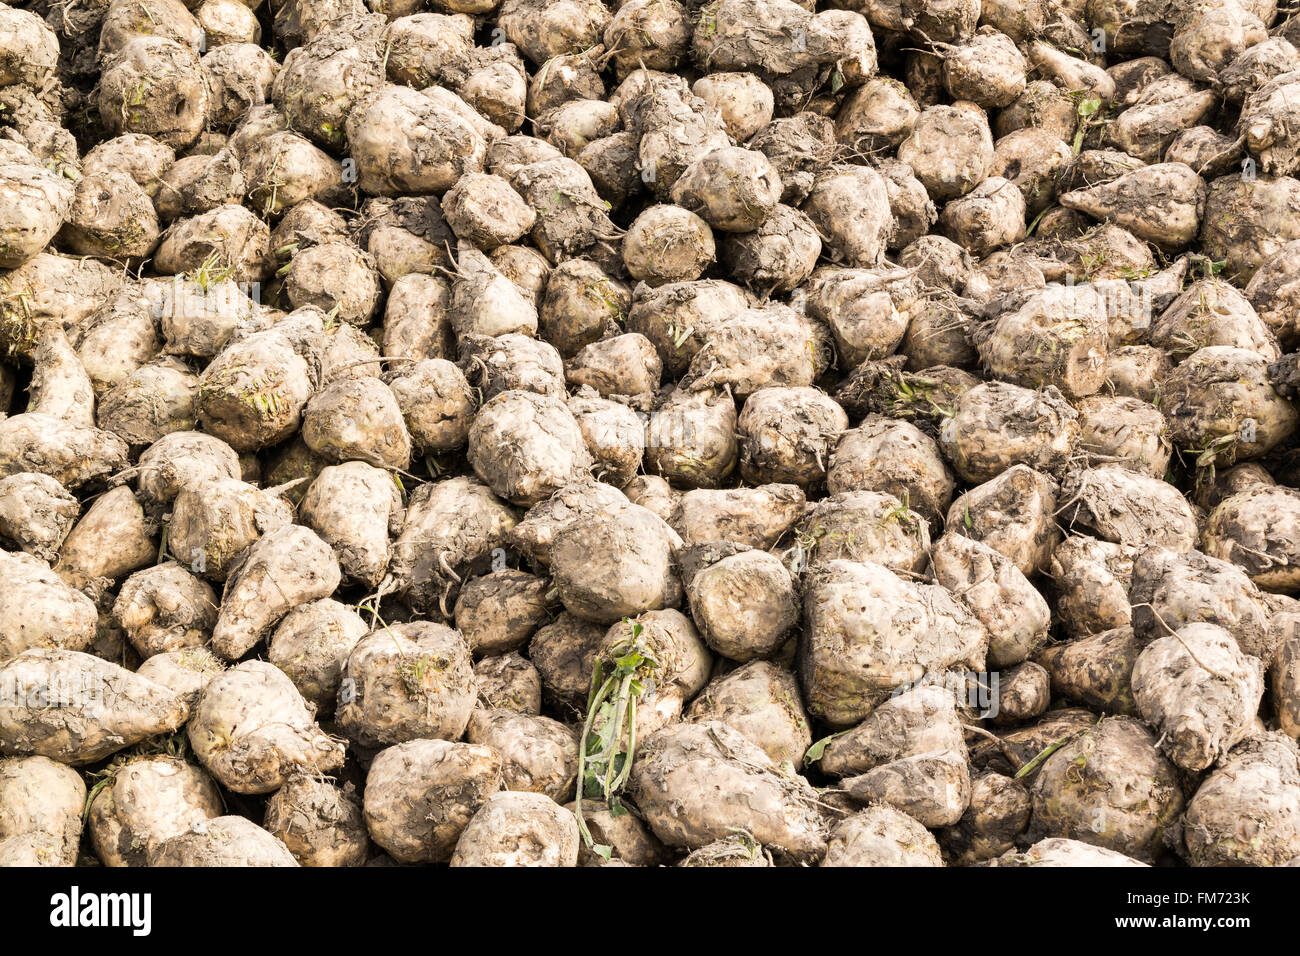 Amas de racines de betterave à sucre empilés après la récolte en Frise (Pays-Bas) Banque D'Images